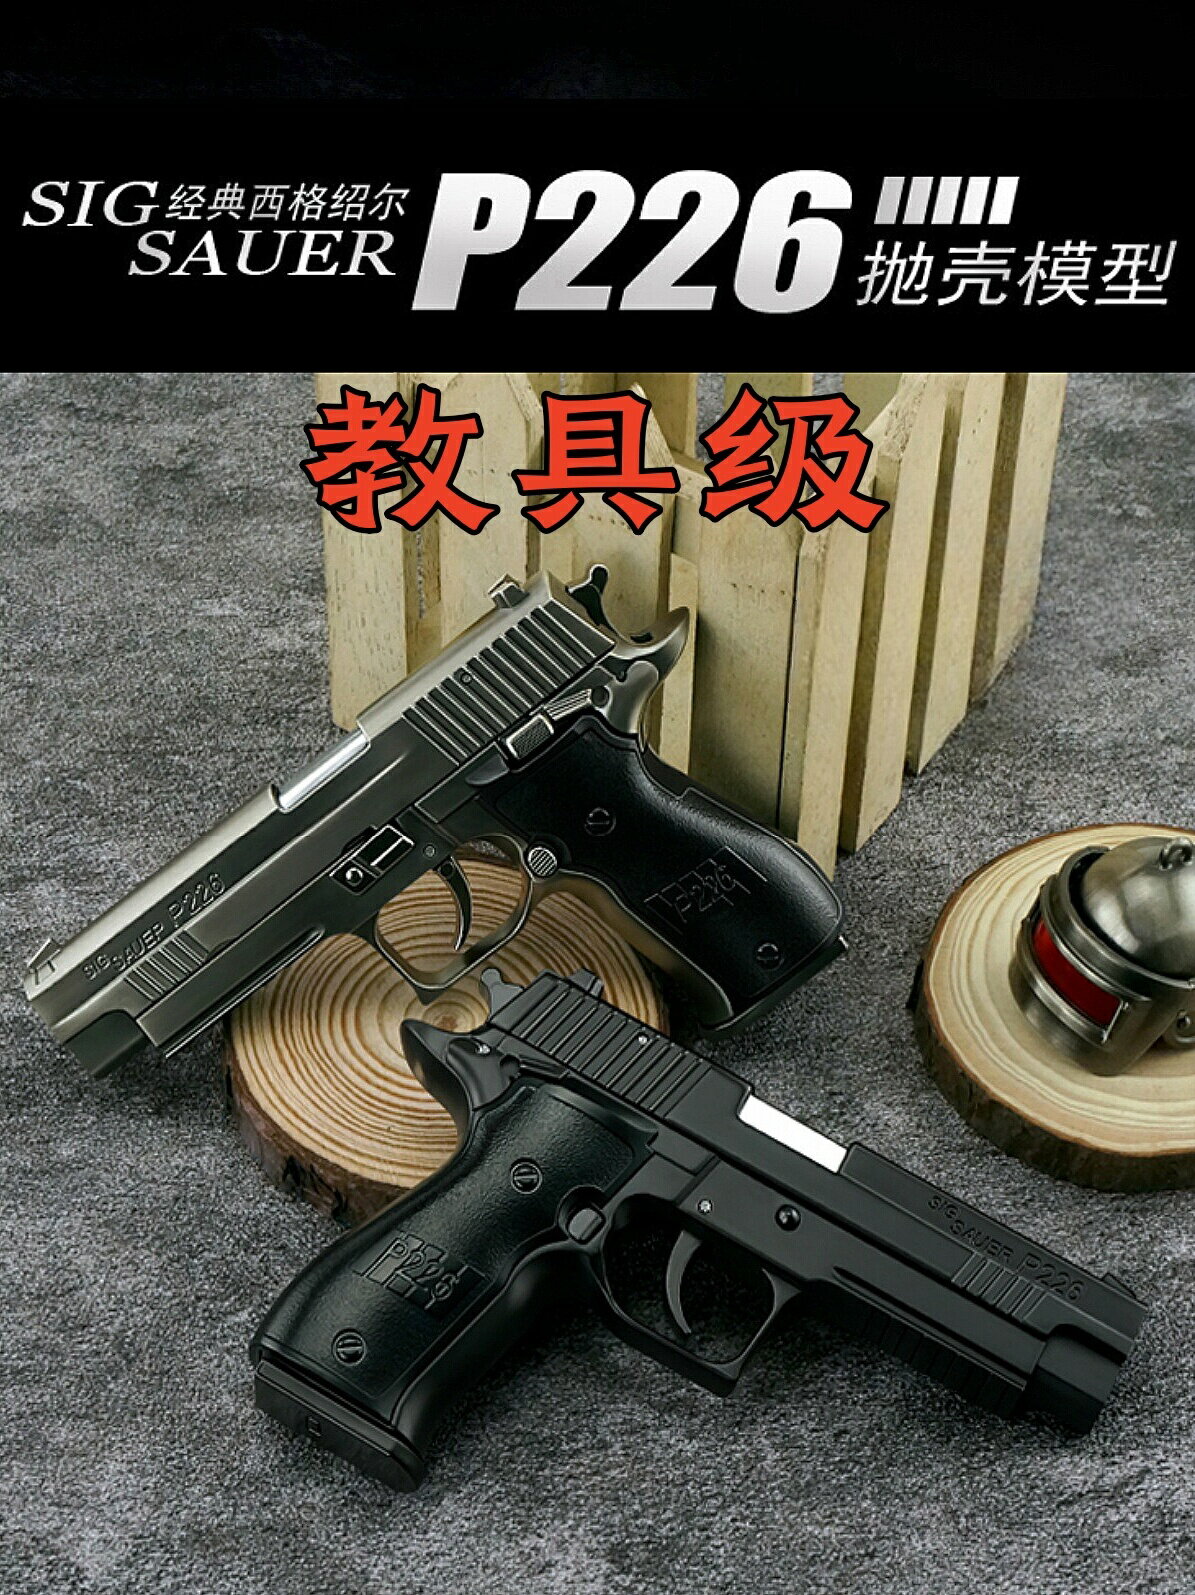 邵爾1:2.05合金P226模型玩具手槍全金屬仿真兒童軍模男孩不可發射